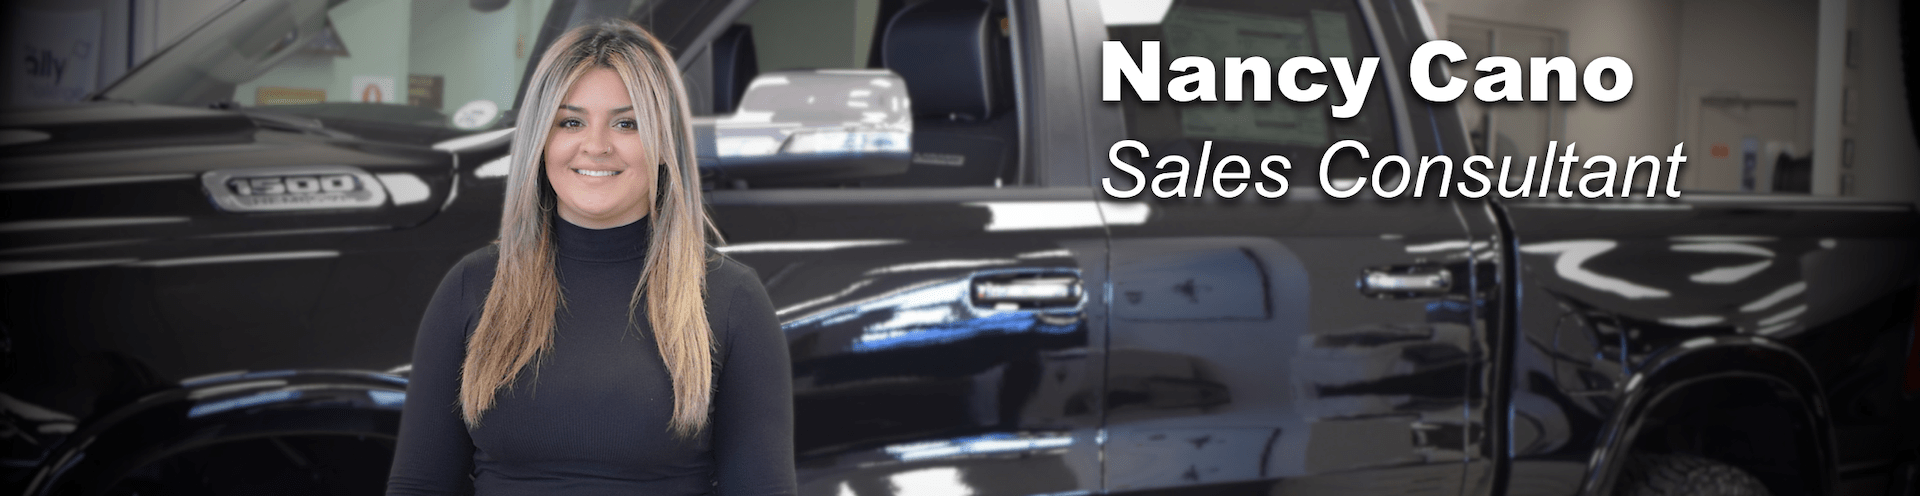 nancy cano sales consultant prestige chrysler dodge jeep ram